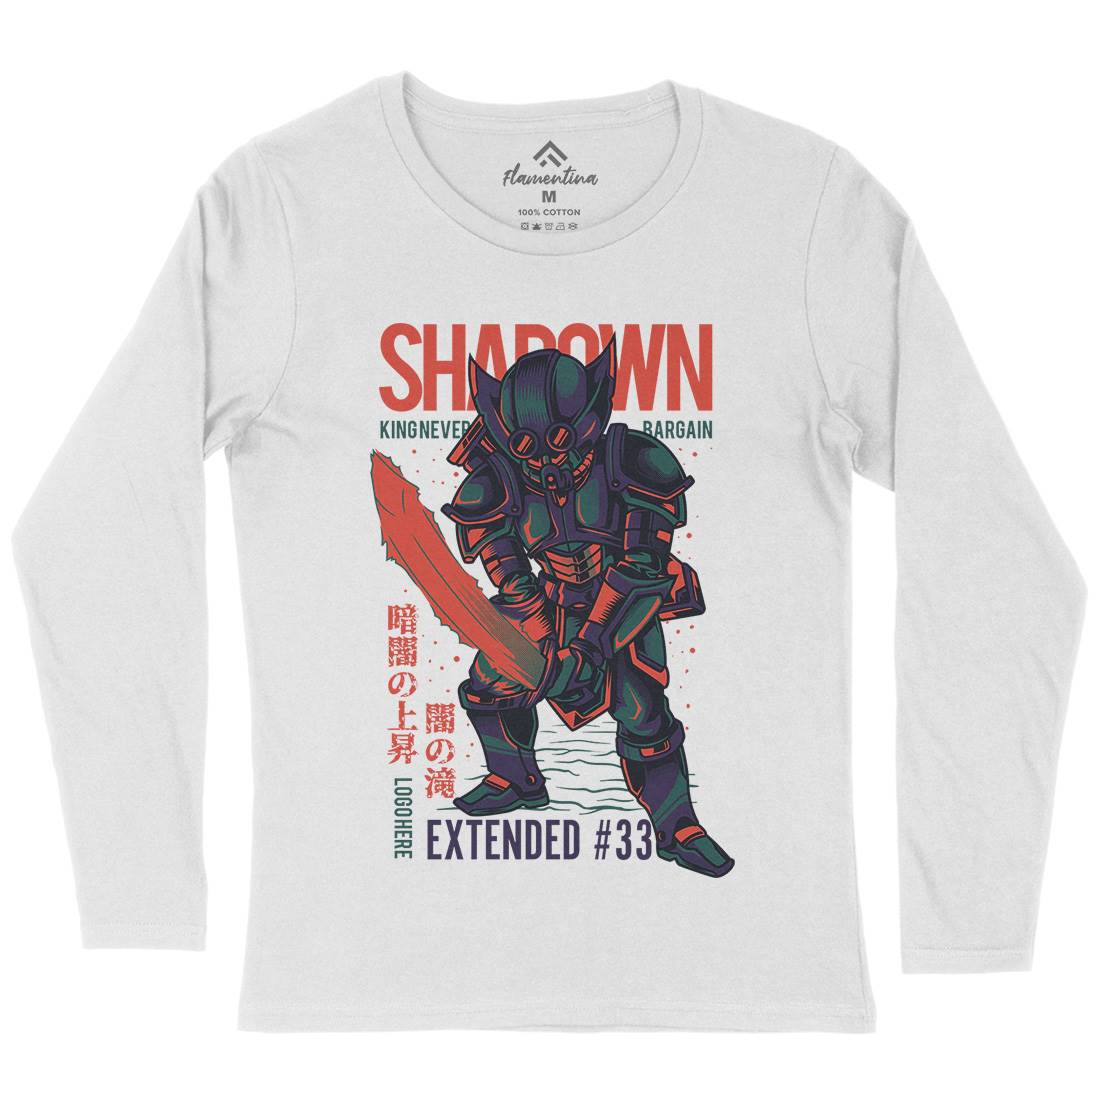 Shadown Knight Womens Long Sleeve T-Shirt Warriors D812